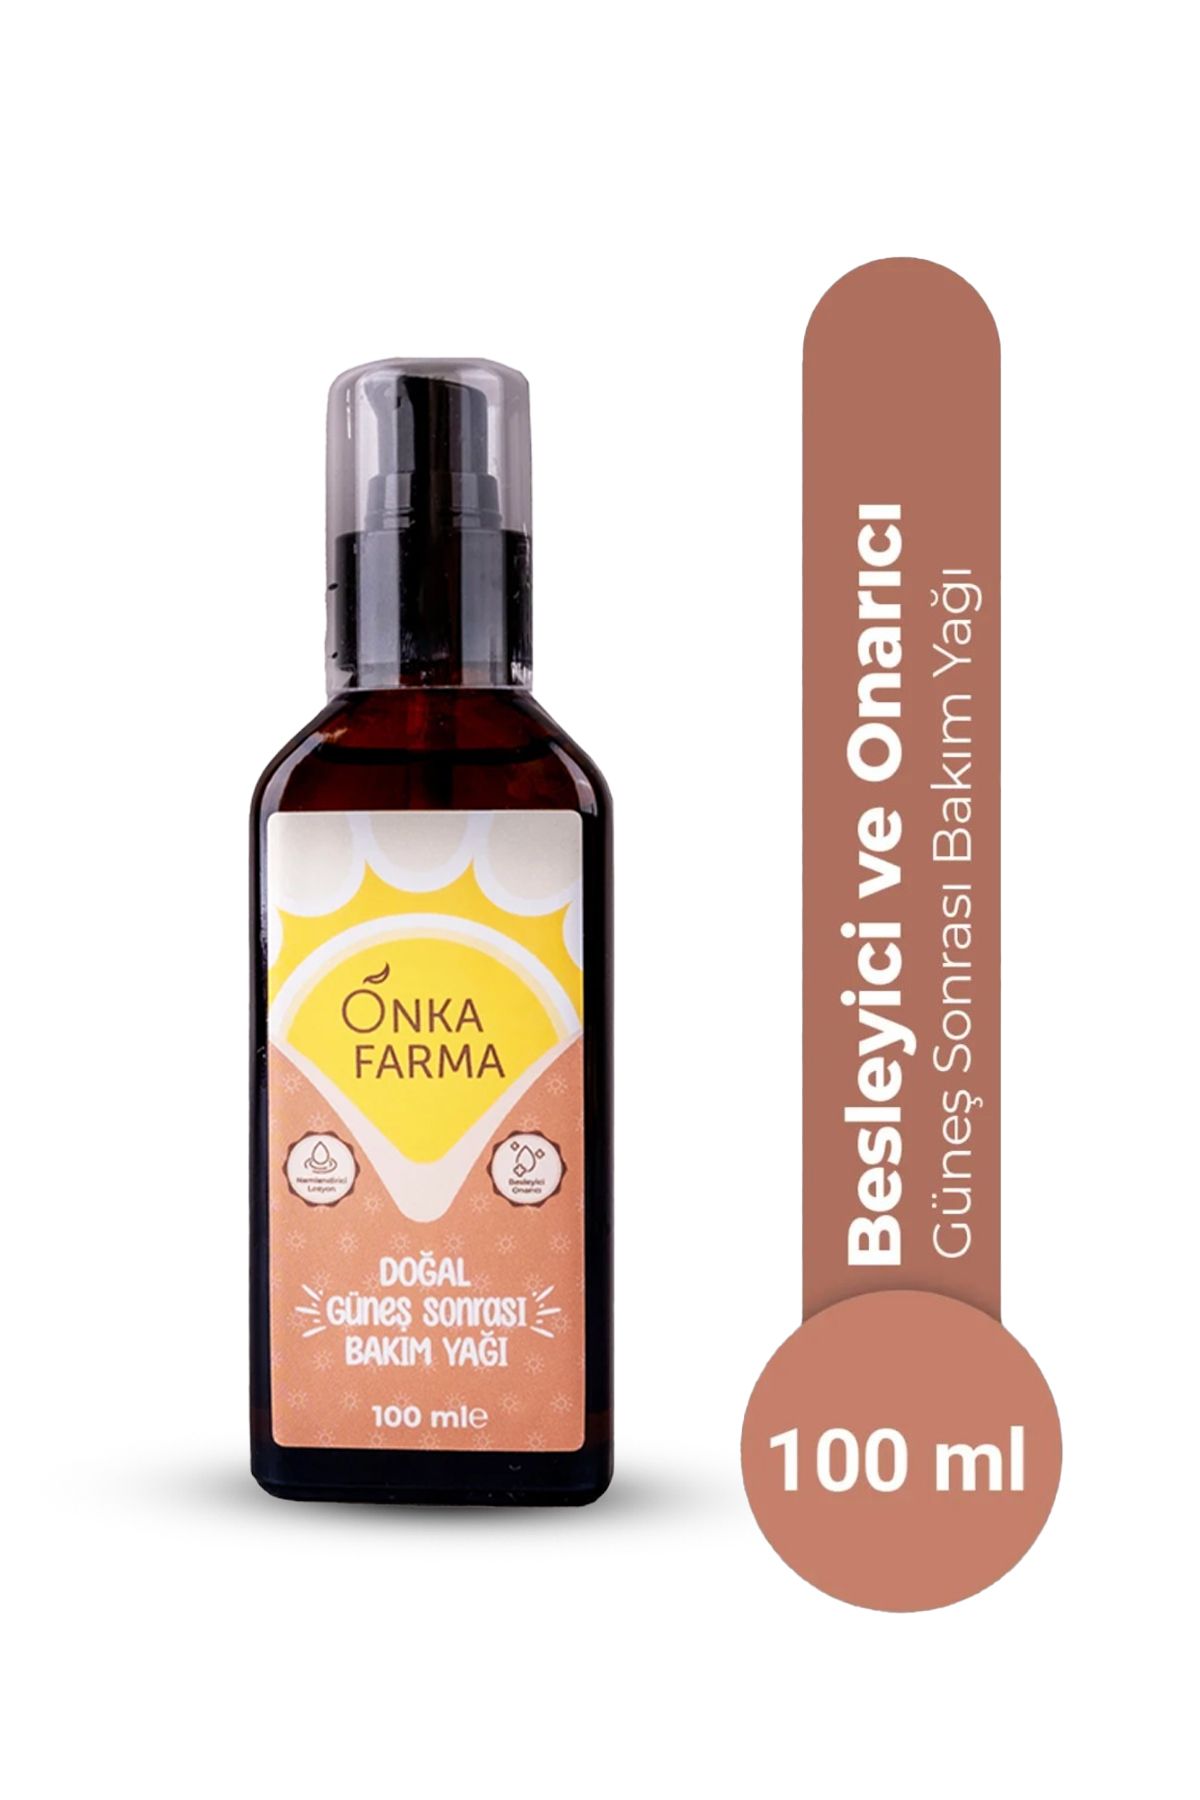 OnkaFarma Onka Farma Doğal Güneş Sonrası Bakım Yağı 100 ml - Yenileyici Sıkılaştırıcı Etkili %100 Doğal